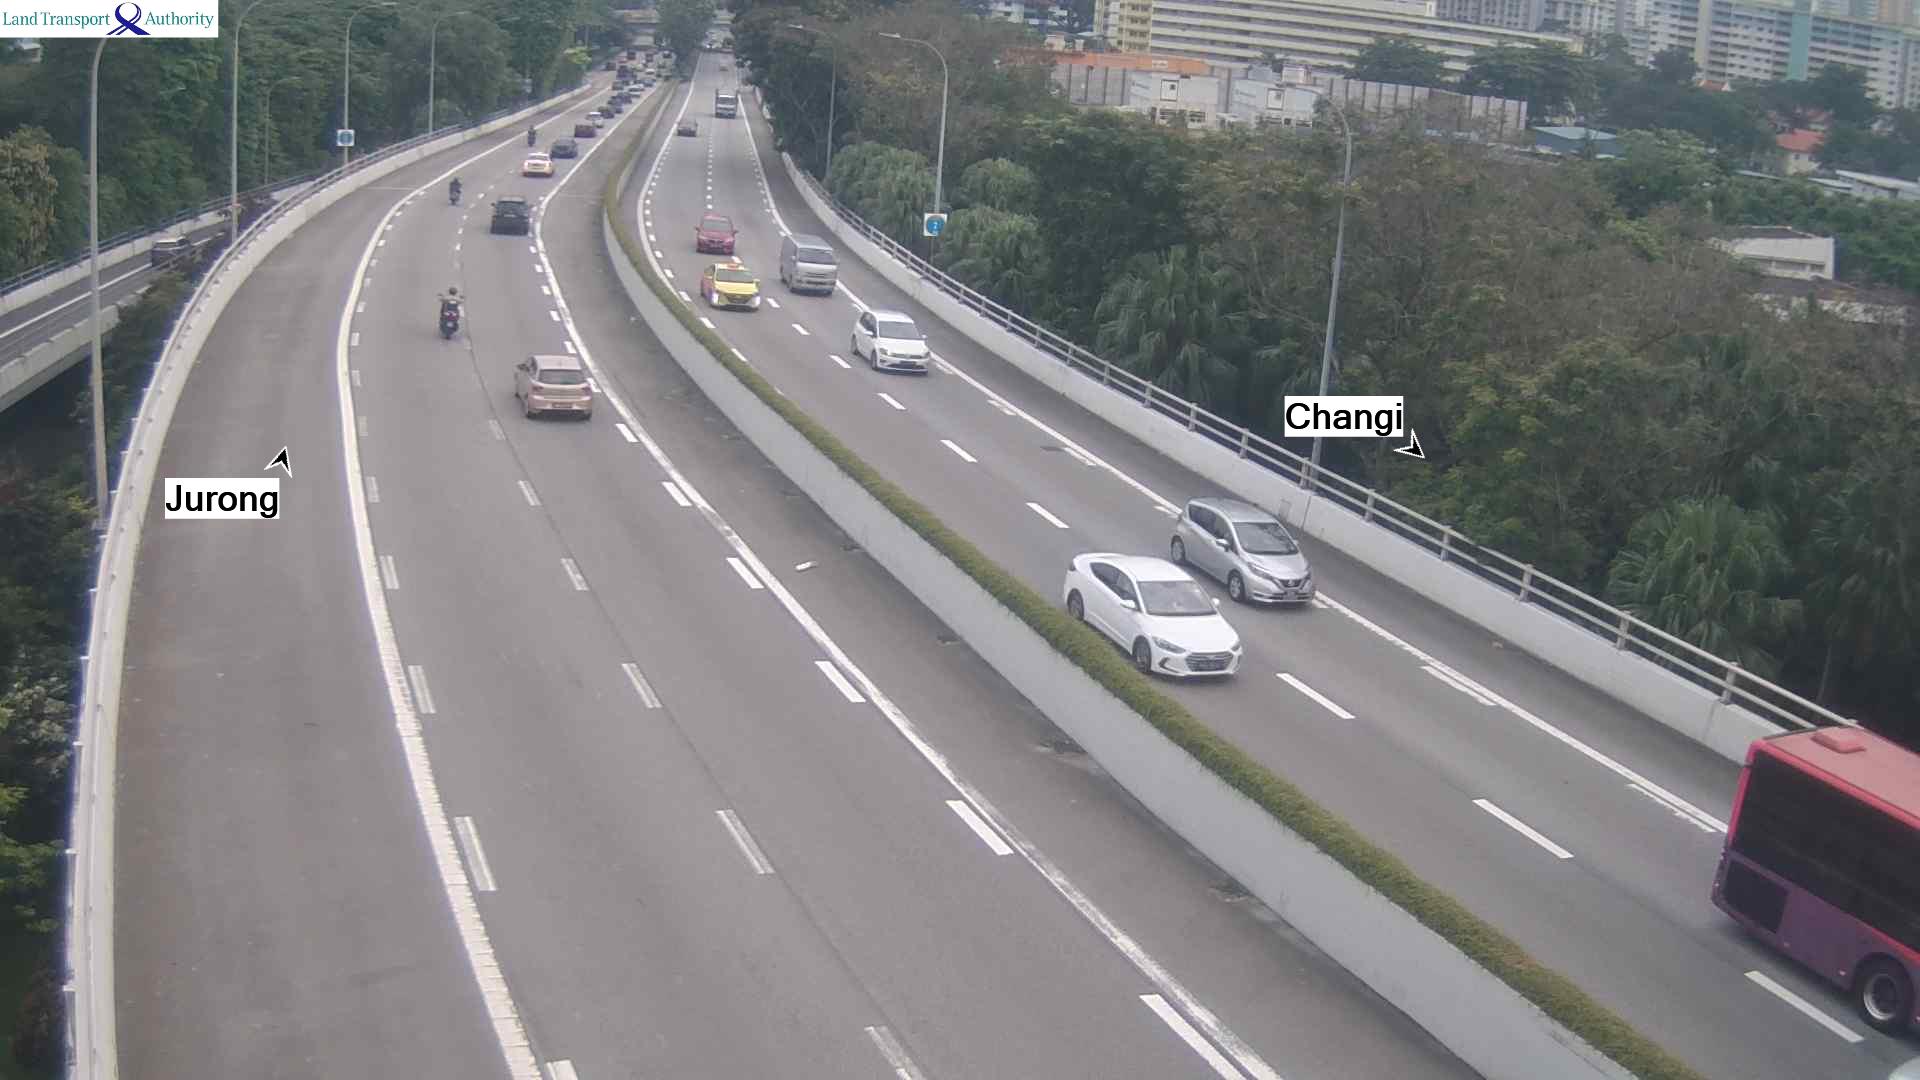 View from Keppel Viaduct - Ayer Rajah Expressway (AYE) - Singapore